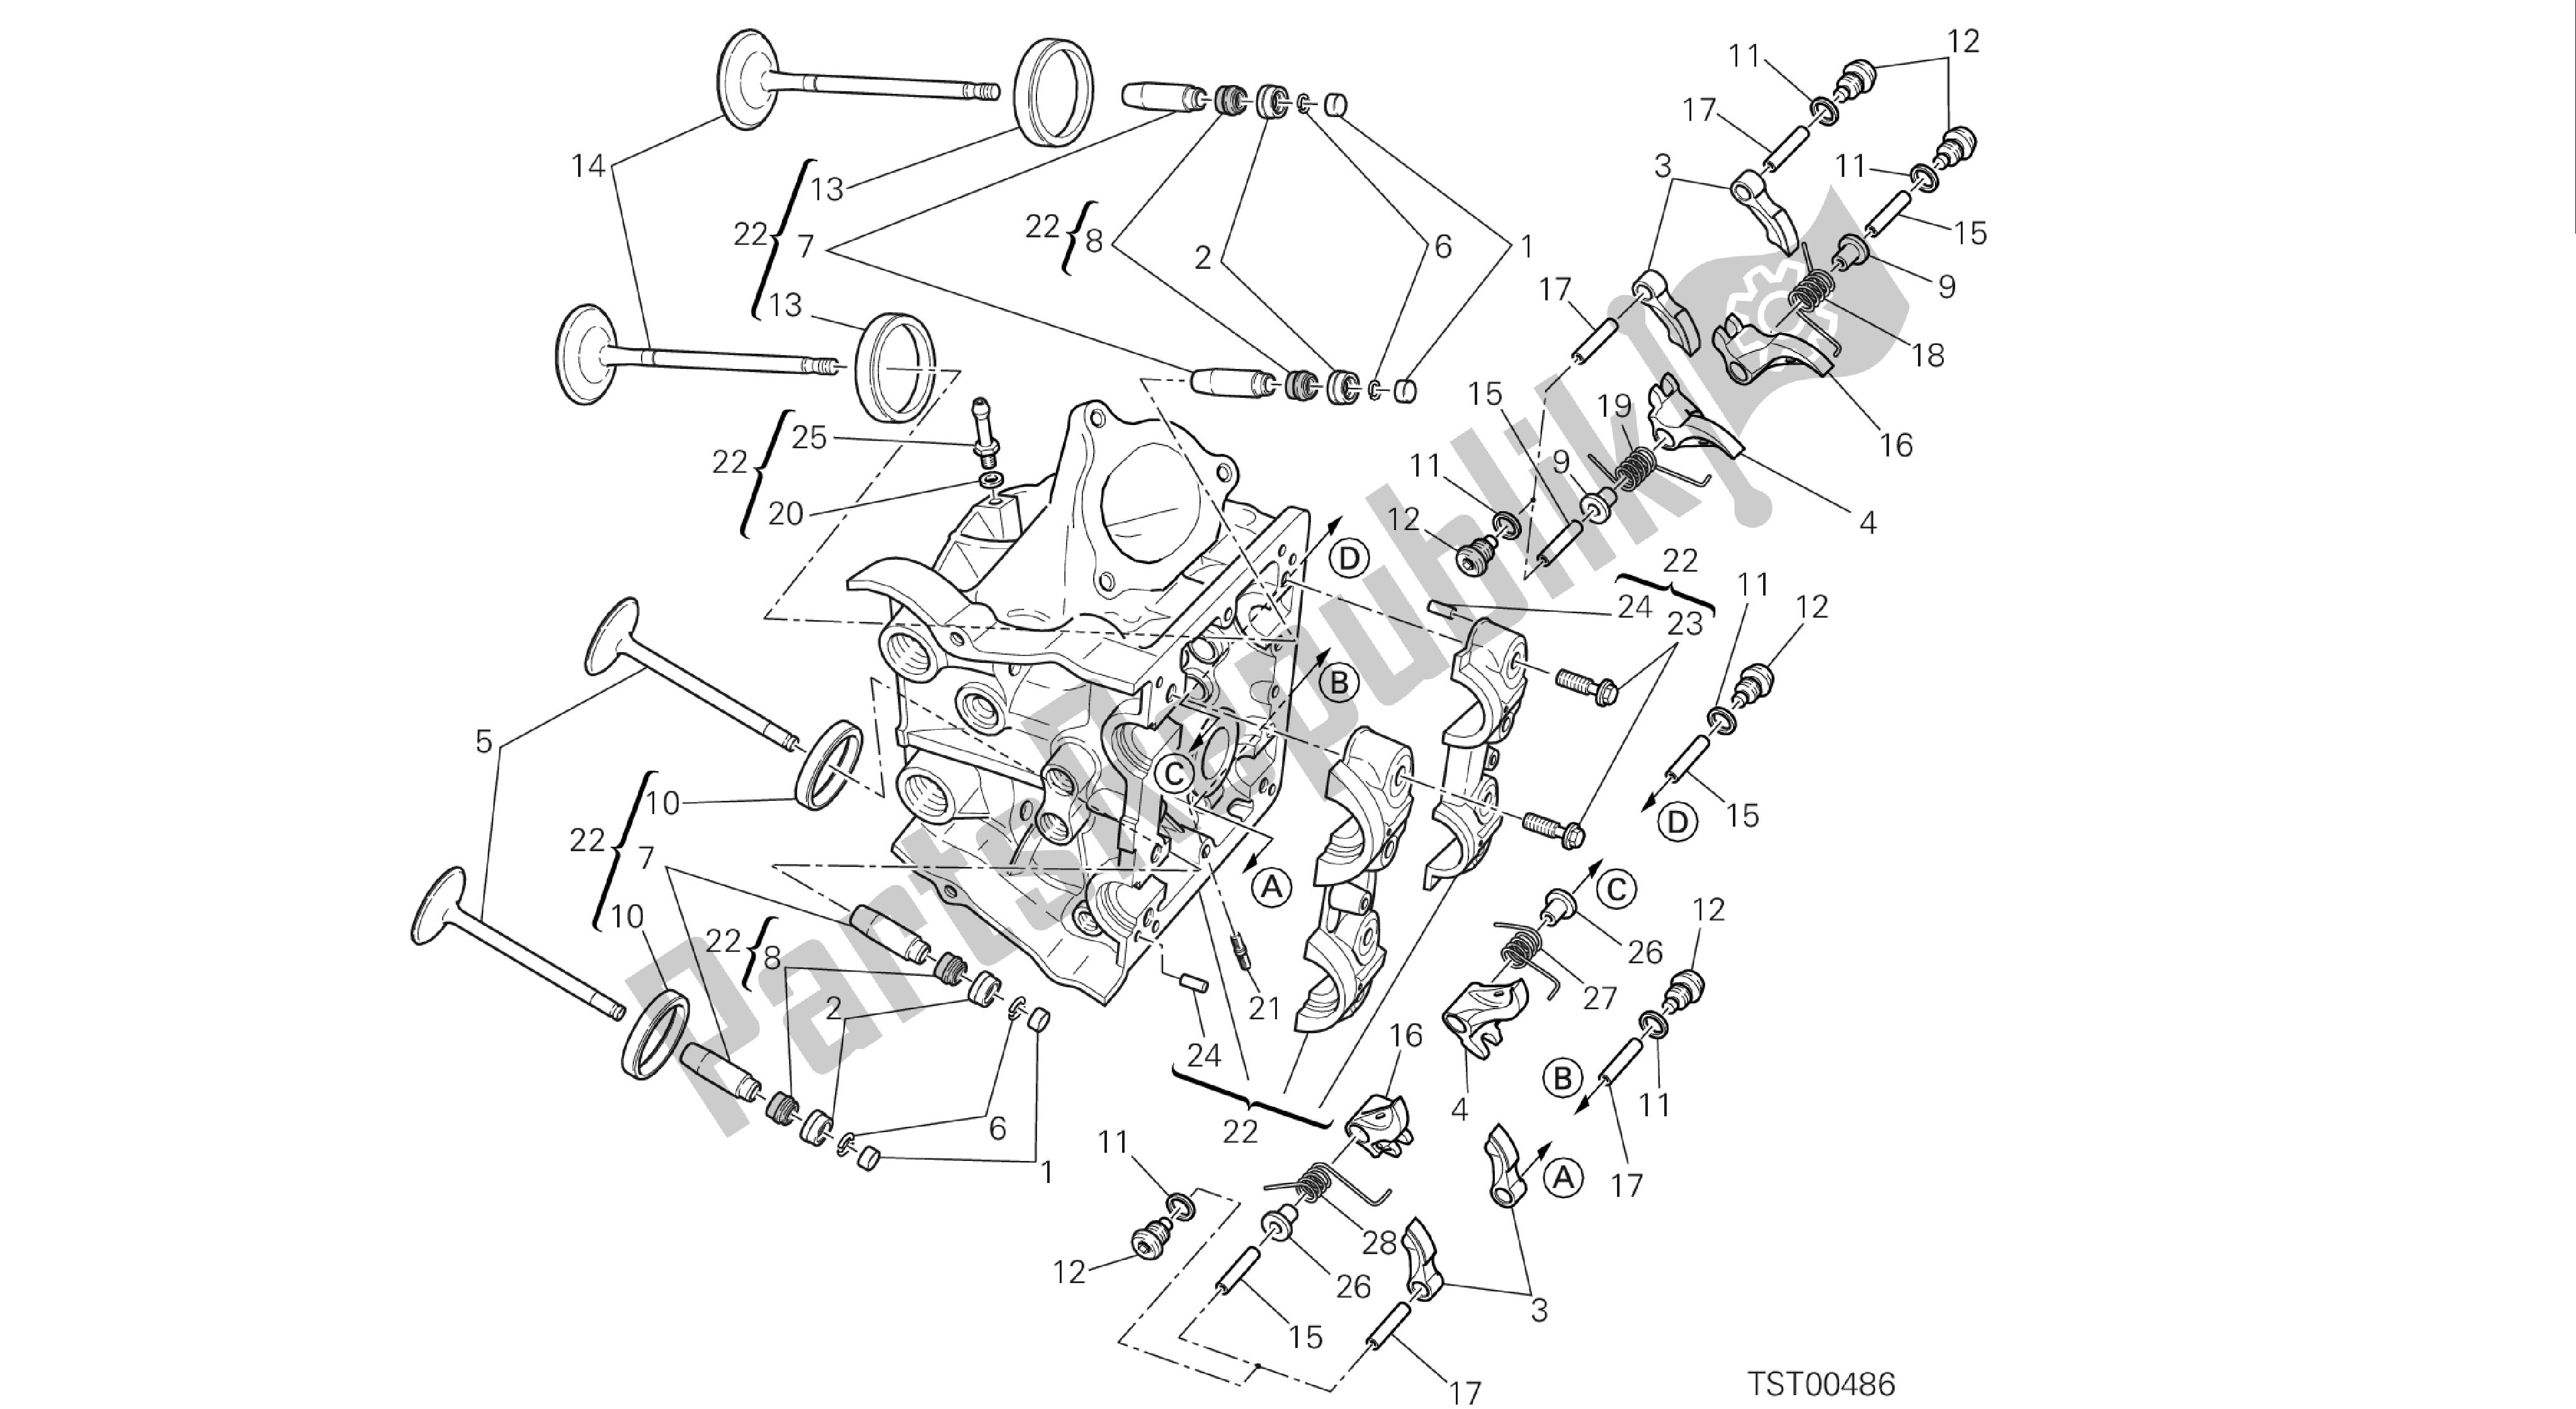 Todas as partes de Desenho 015 - Cabeça Horizontal [mod: Hym-sp; Xst: Aus, Eur, Fra, Jap] Engenharia De Grupo do Ducati Hypermotard 821 2013